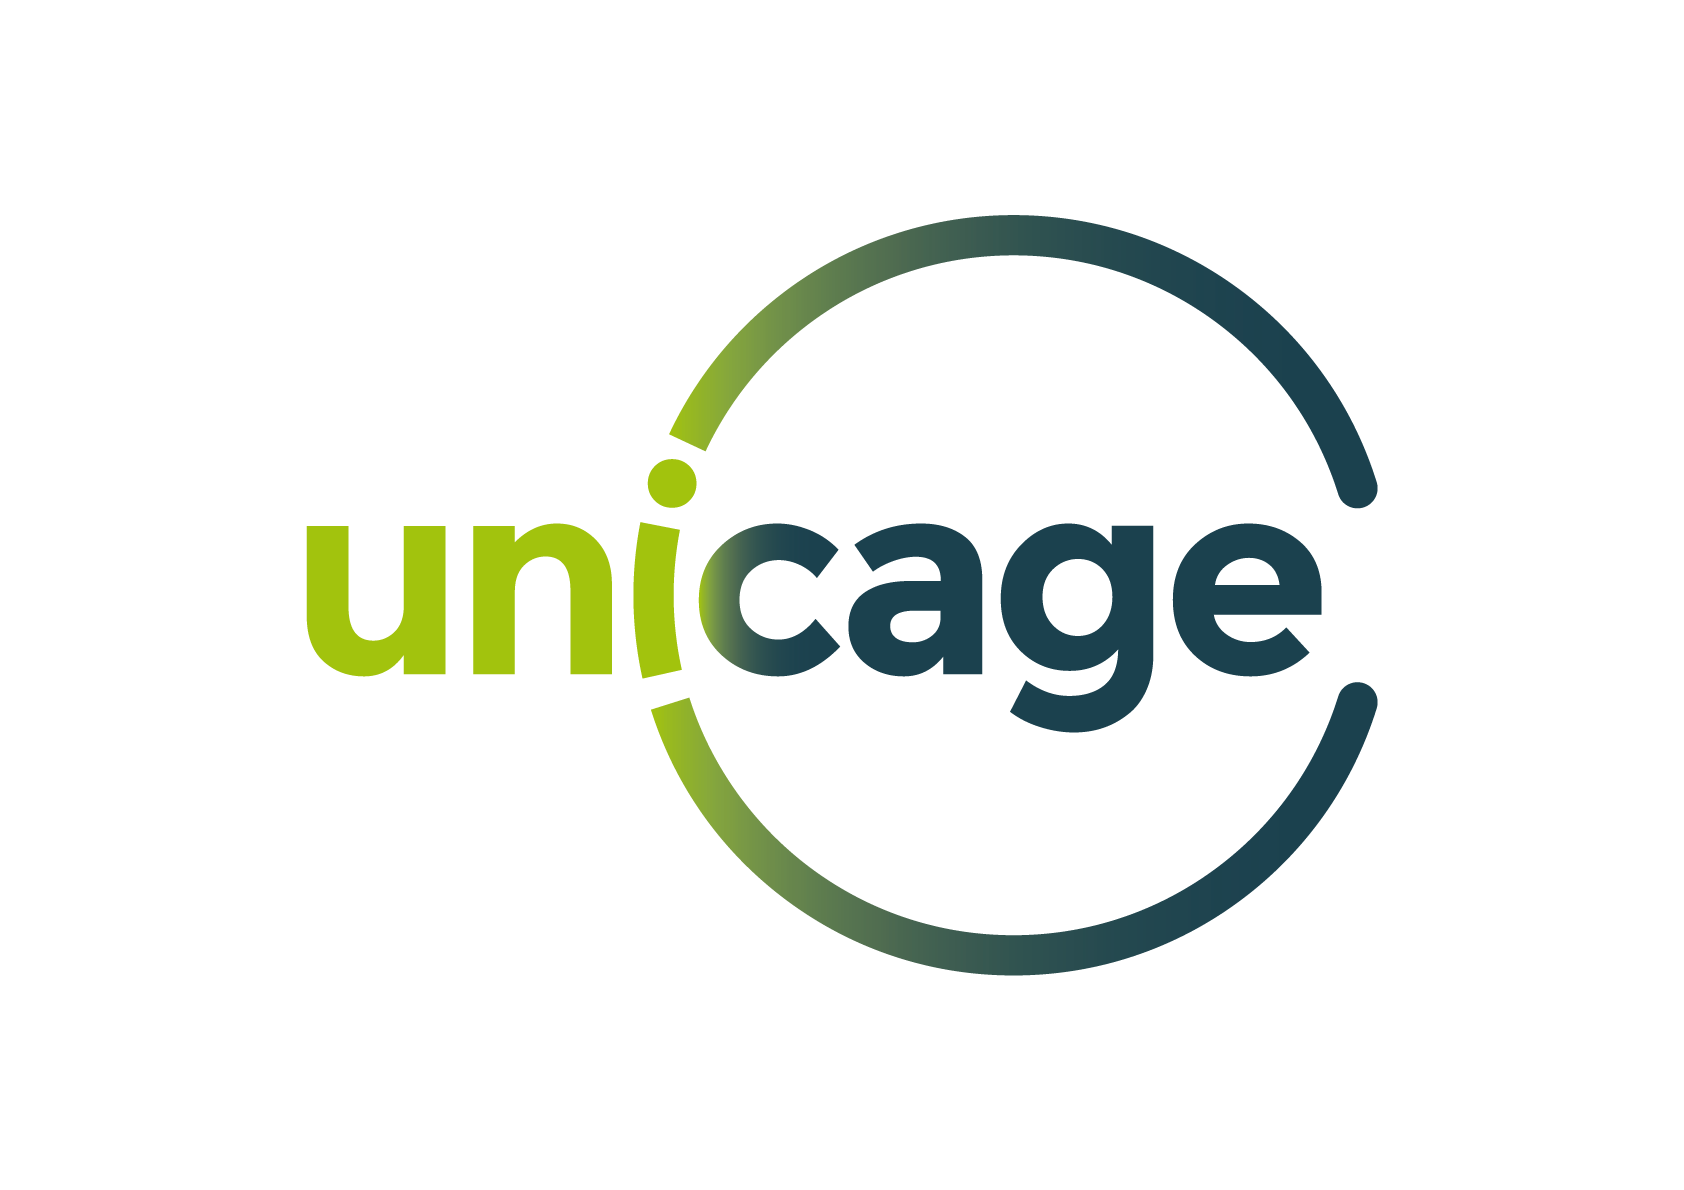 unicage